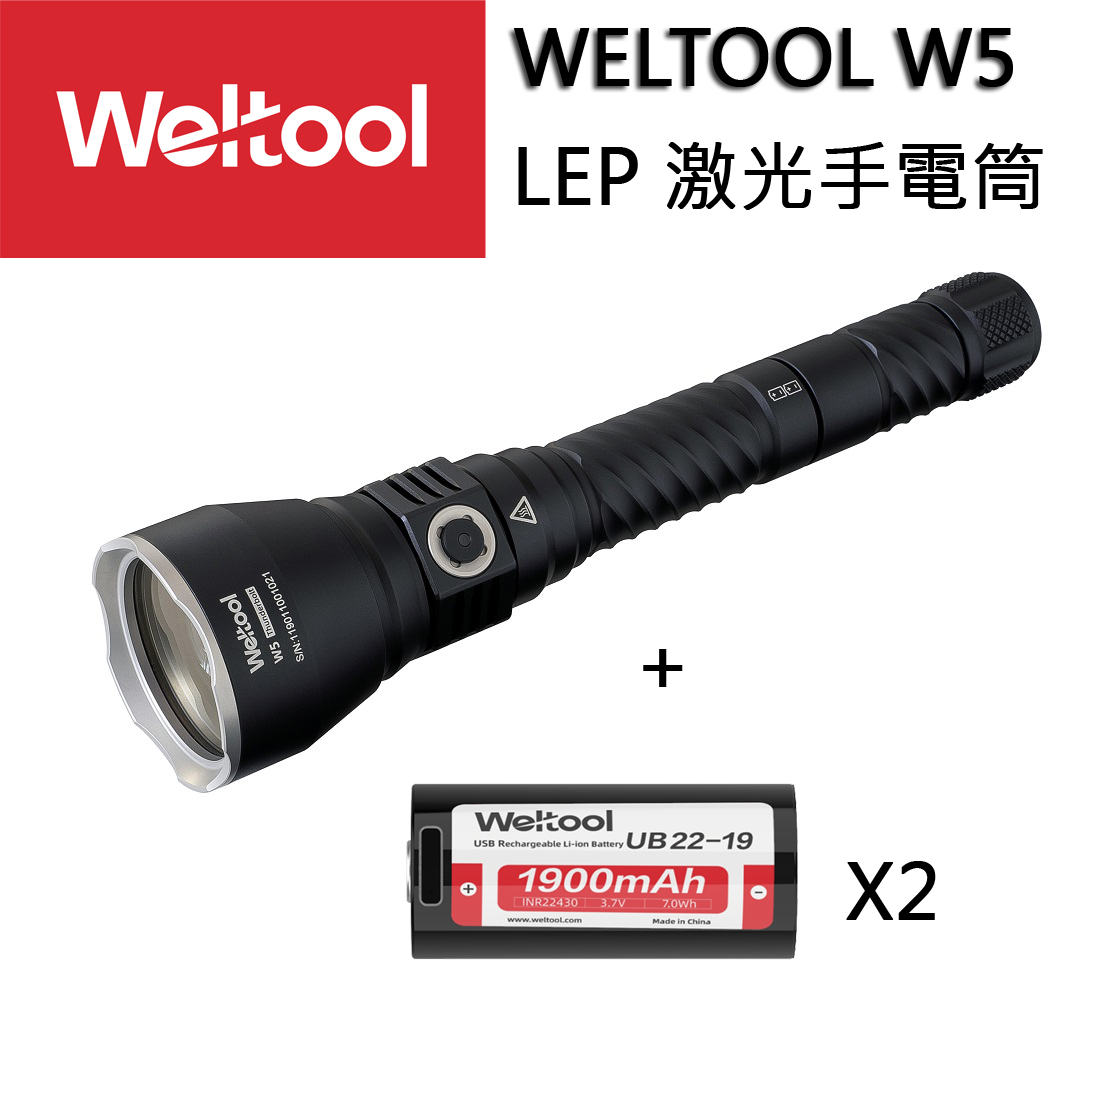 2022 全新推出 Weltool W5 LEP 鐳射激光 2800米 手電筒!!開團中!!